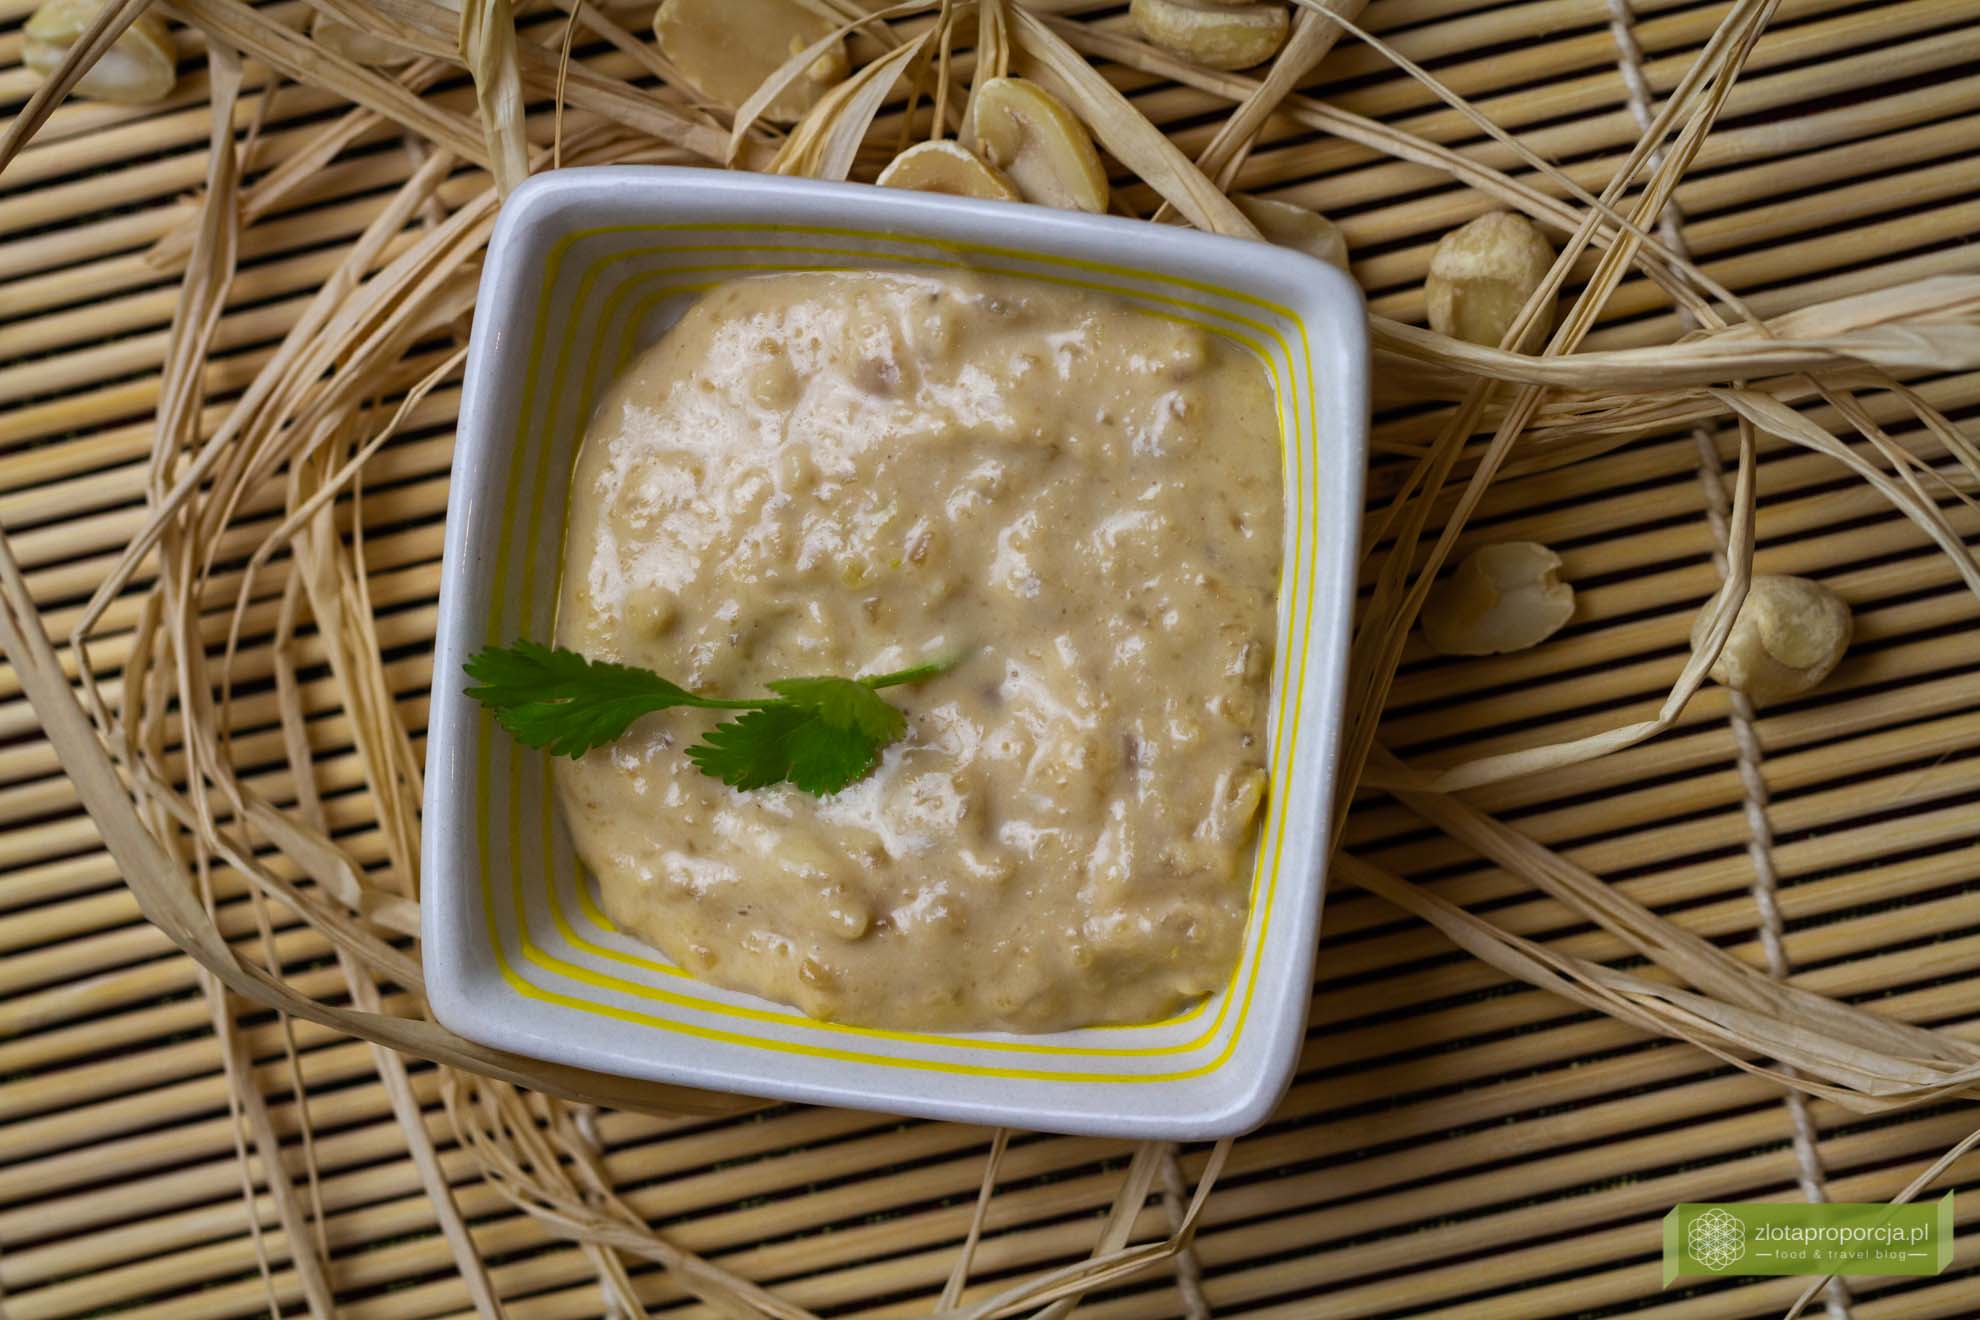 Если вам нравятся пряные ароматы, попробуйте наш рецепт   Тайский сладкий соус чили   и   Индонезийский острый соус сэмбэл элек   ,